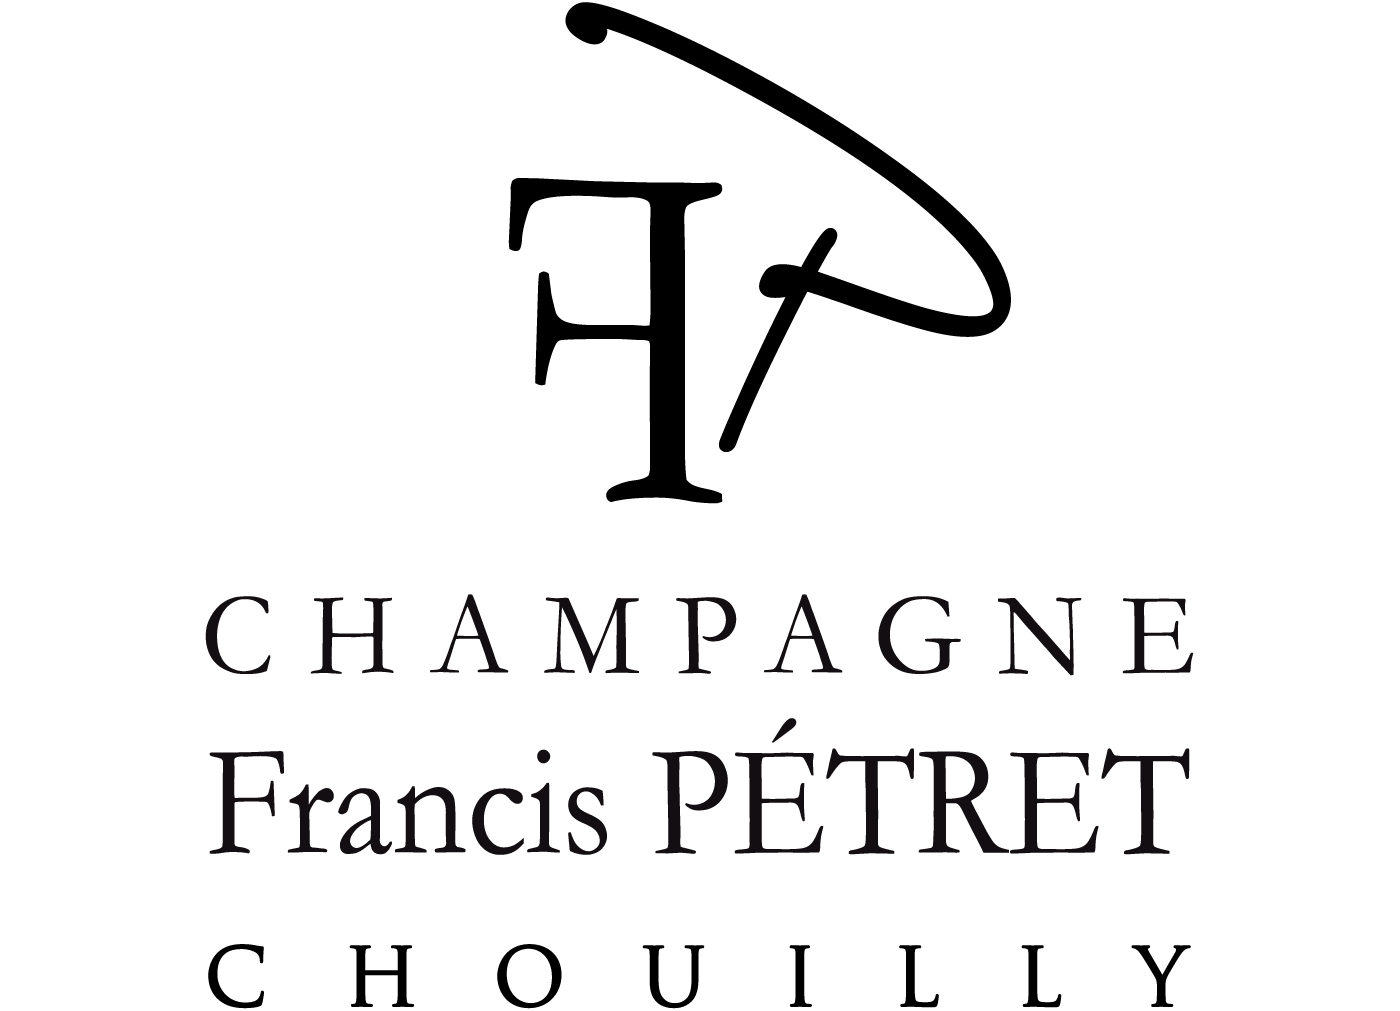 Champagne Francis Pétret